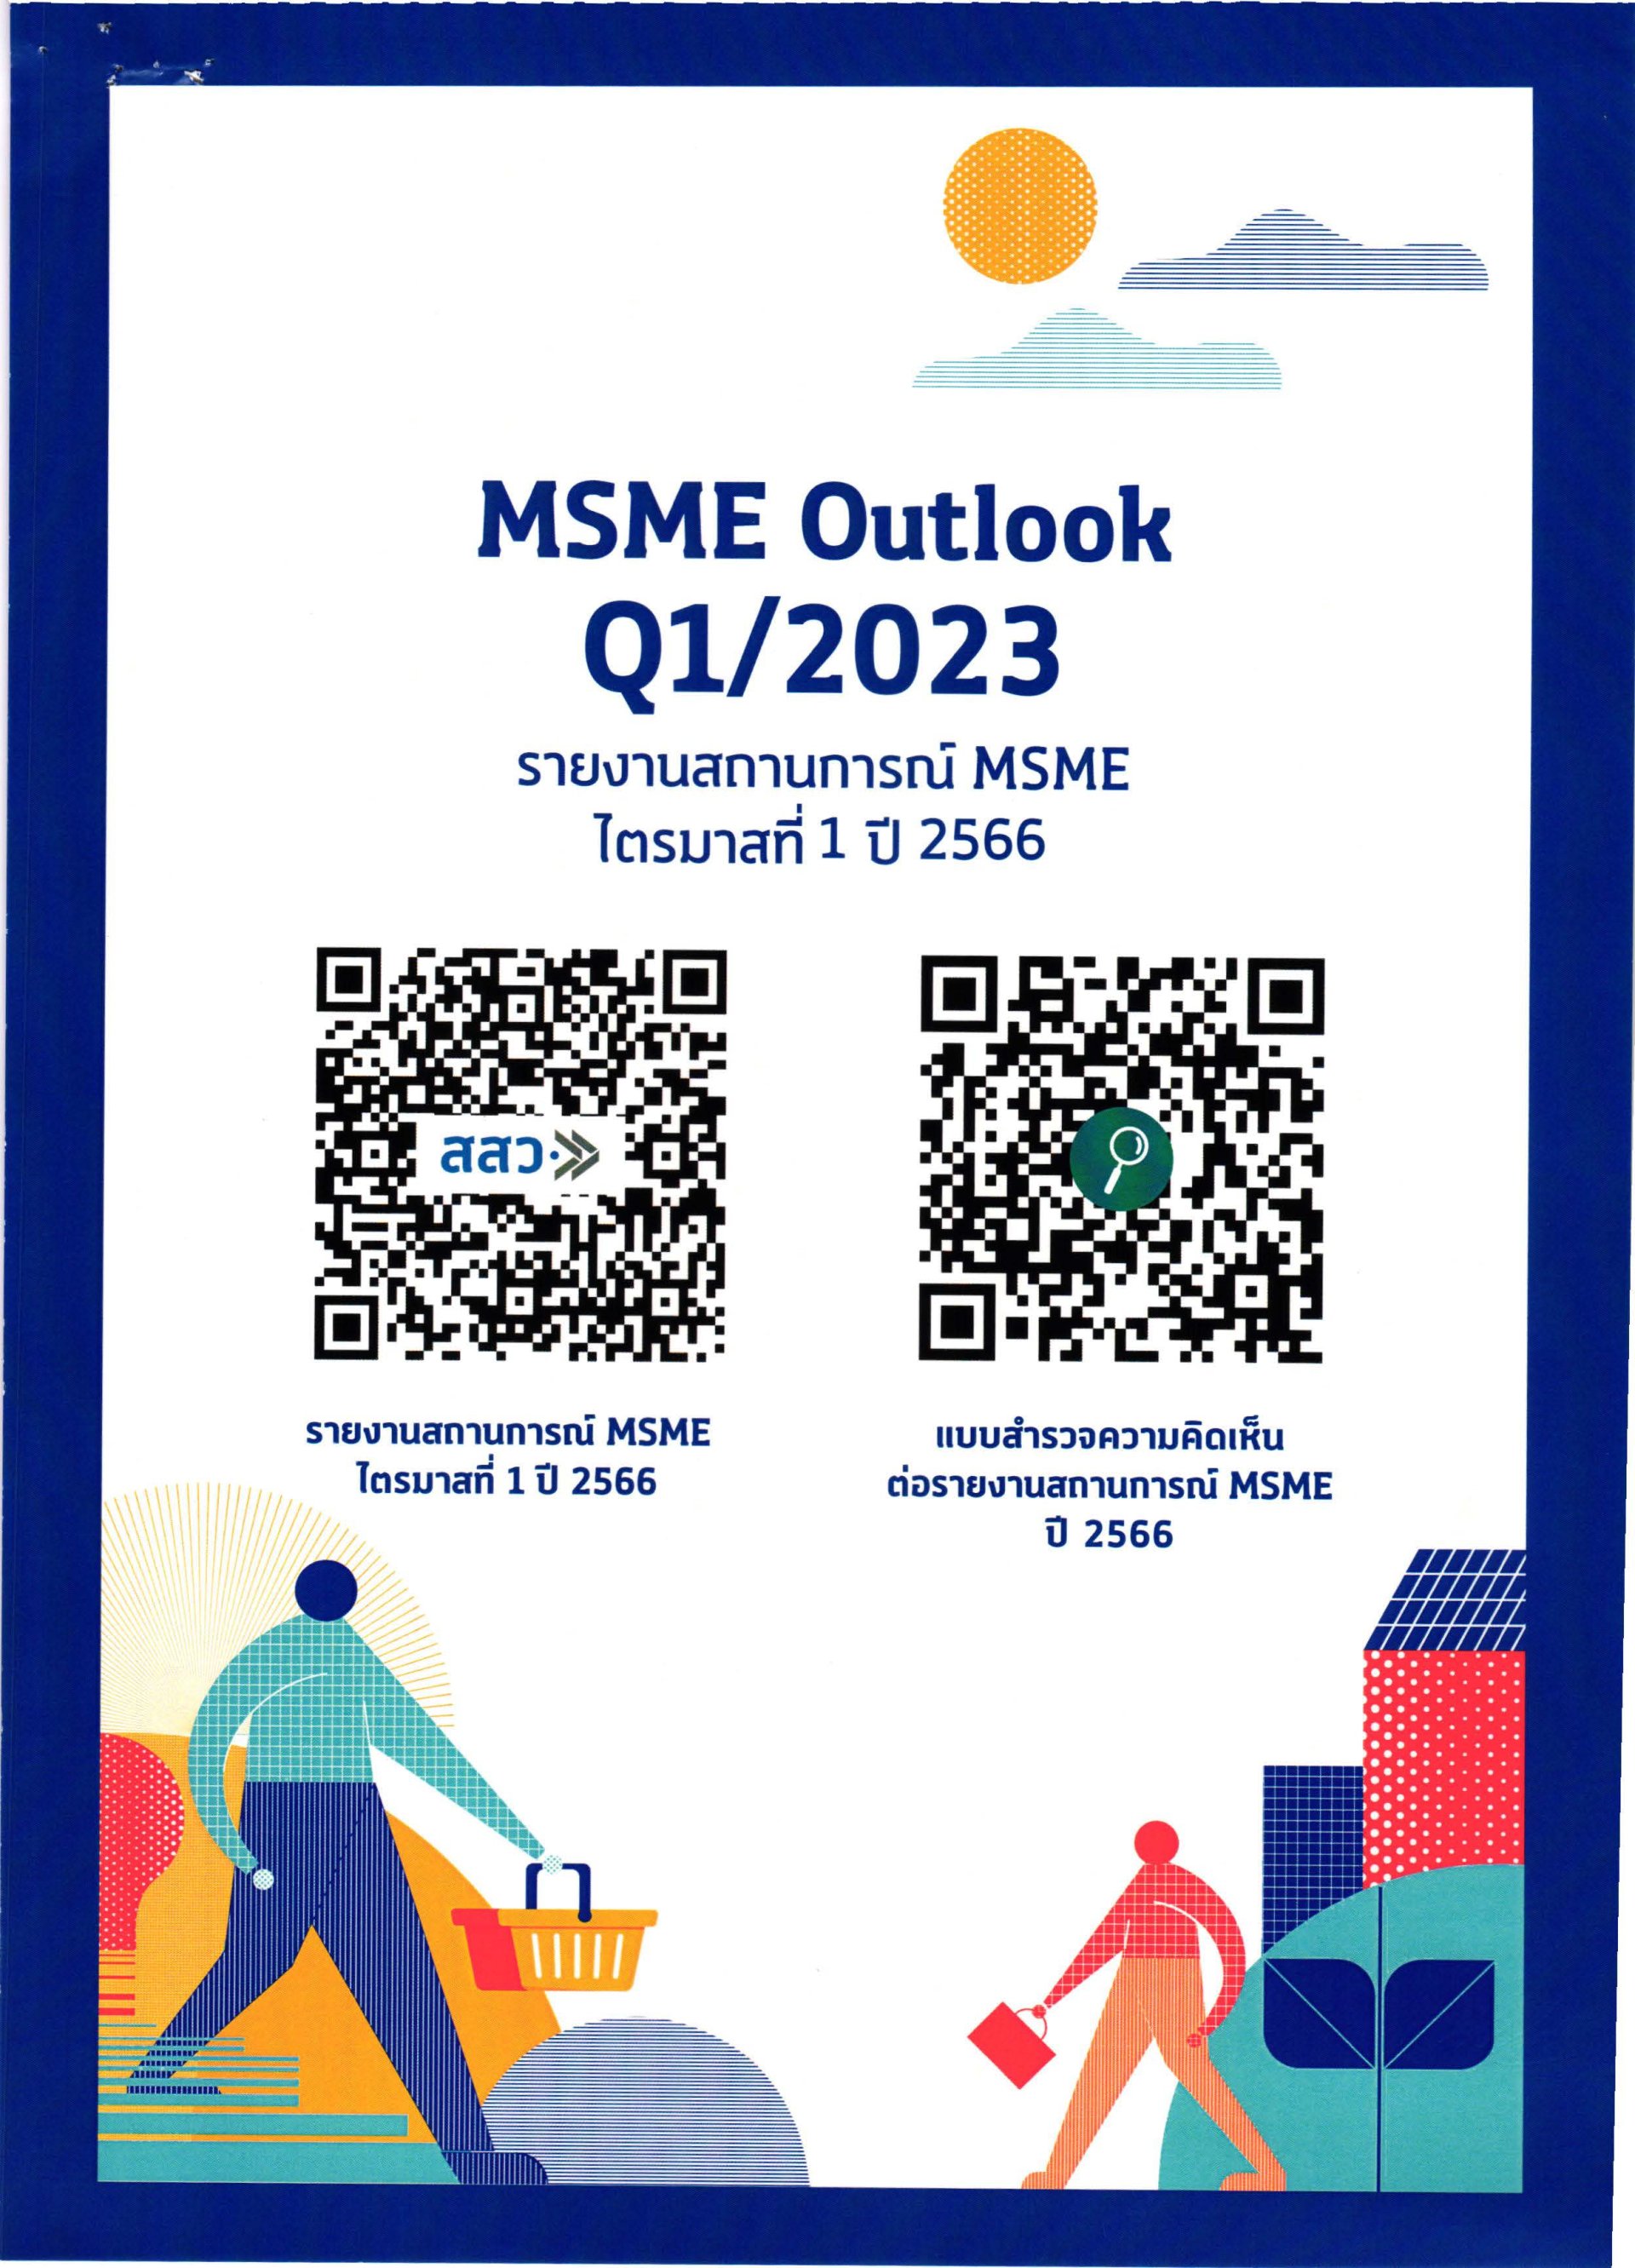 รายงาน MSME Outlook ไตรมาสที่ 1 ปี 2566 ของสำนักงานส่งเสริมวิสาหกิจขนาดกลางและขนาดย่อม (สสว.)